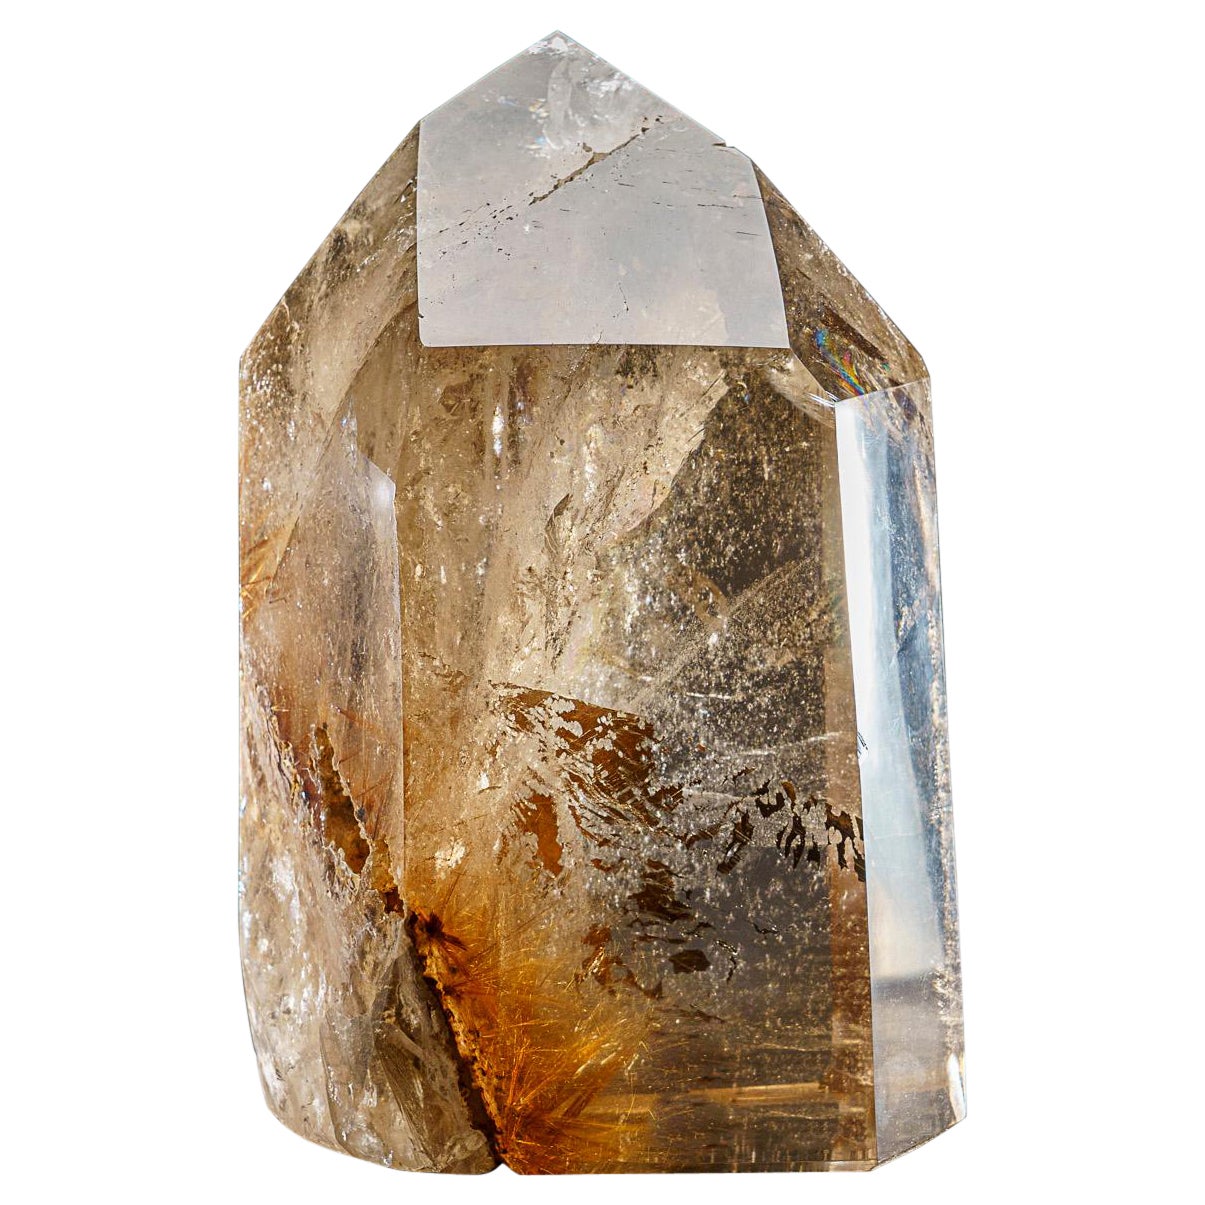 Grand point de cristal de quartz fumé authentique du Brésil (17.5 livres)